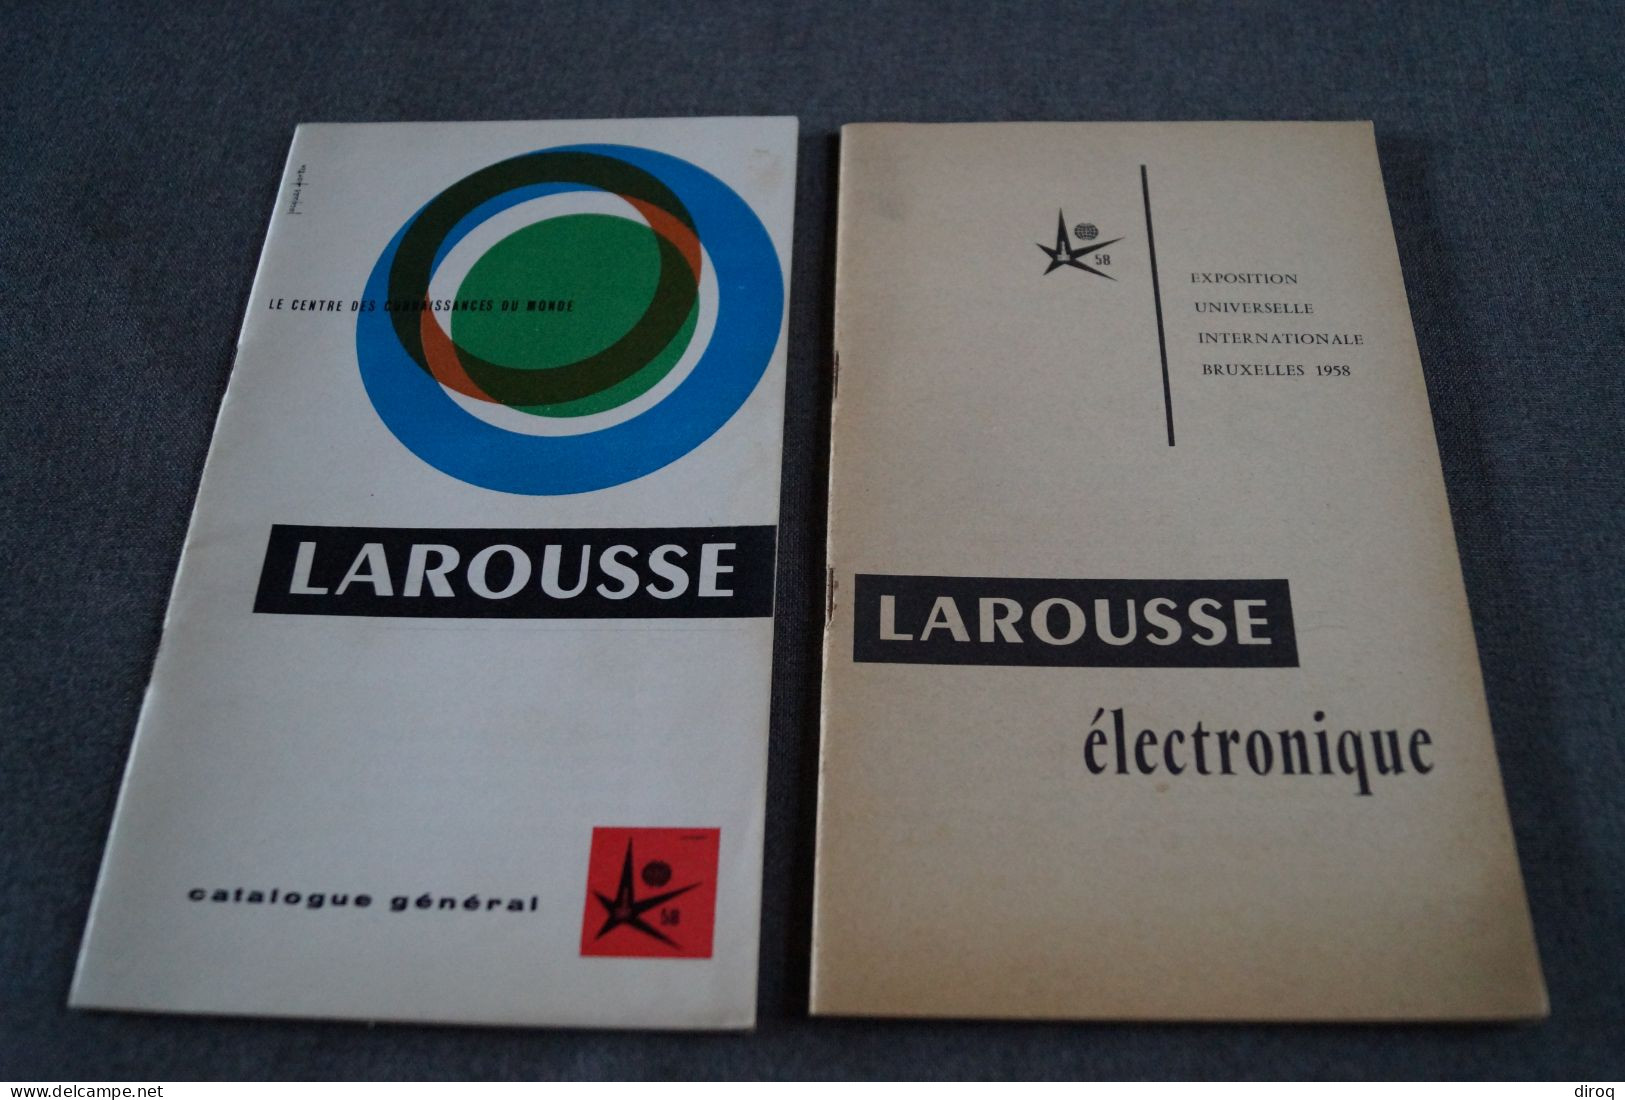 Expo 1958, Bruxelles,publicitaire,Larousse,2 Ouvrages,44 Page Et 34 Pages,20,5 Cm./12,5 Cm. - Publicités